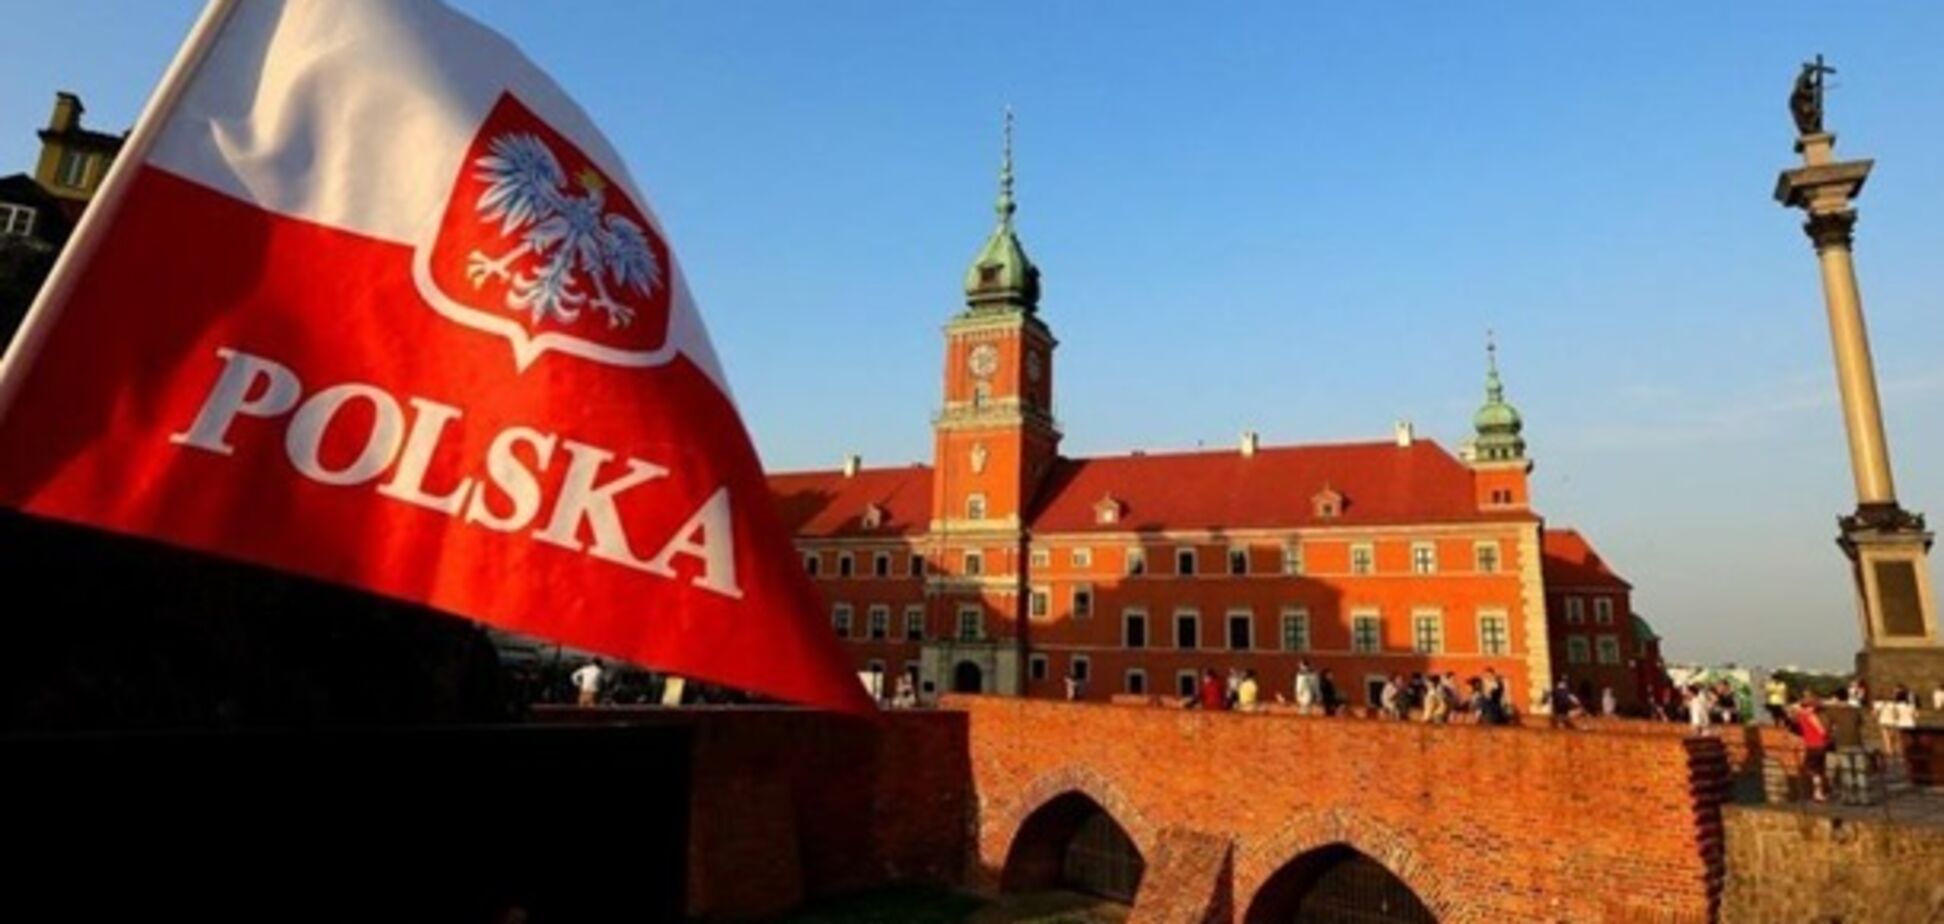 Польща готує захоплення Львова: росЗМІ вибухнули новою 'сенсацією'